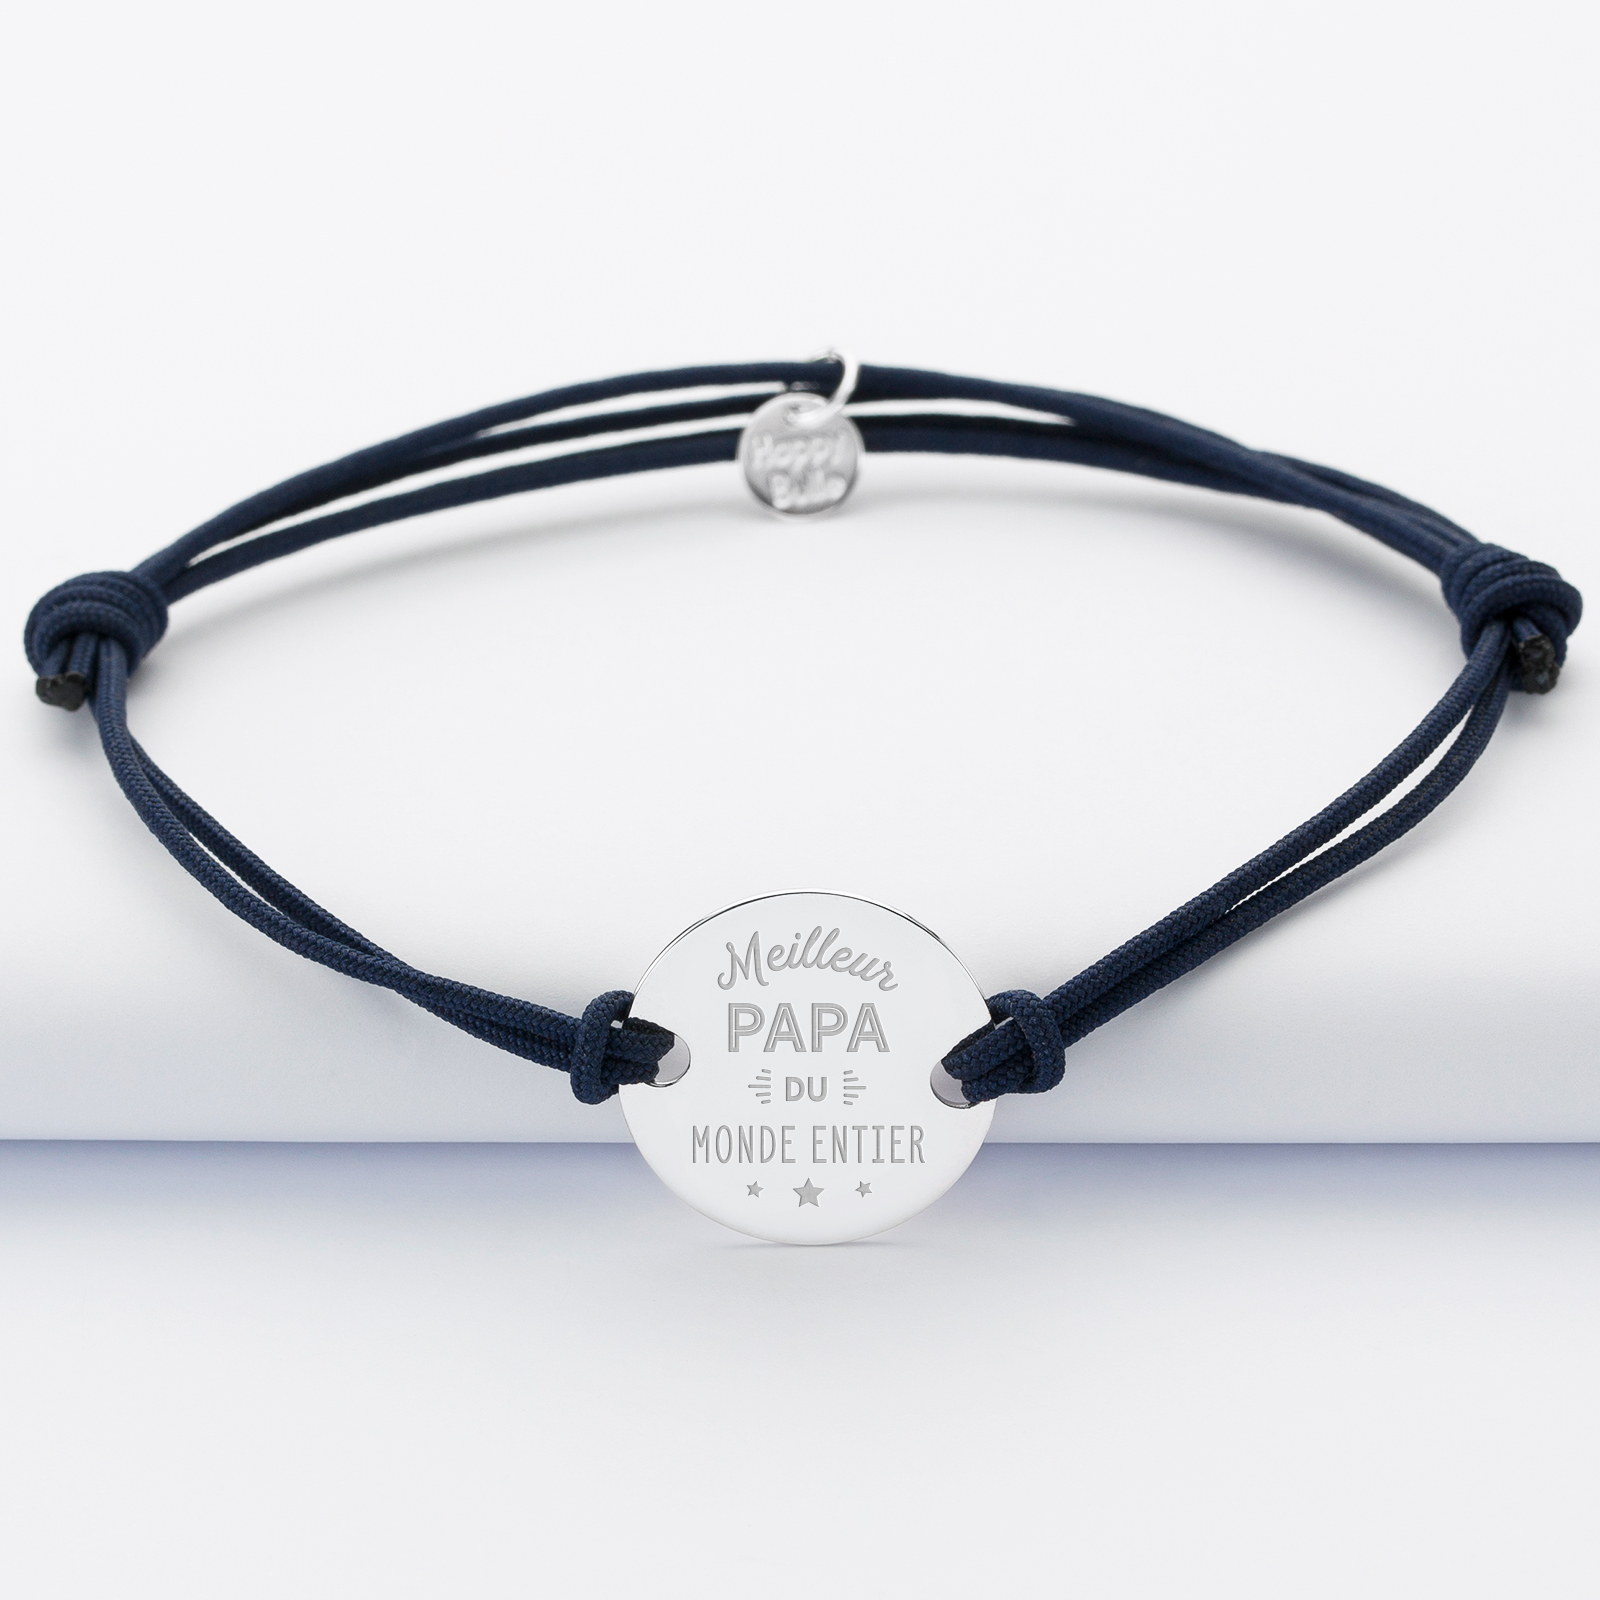 Bracelet Meilleur papa cordon doublé médaille gravée argent 2 trous 20 mm - 1